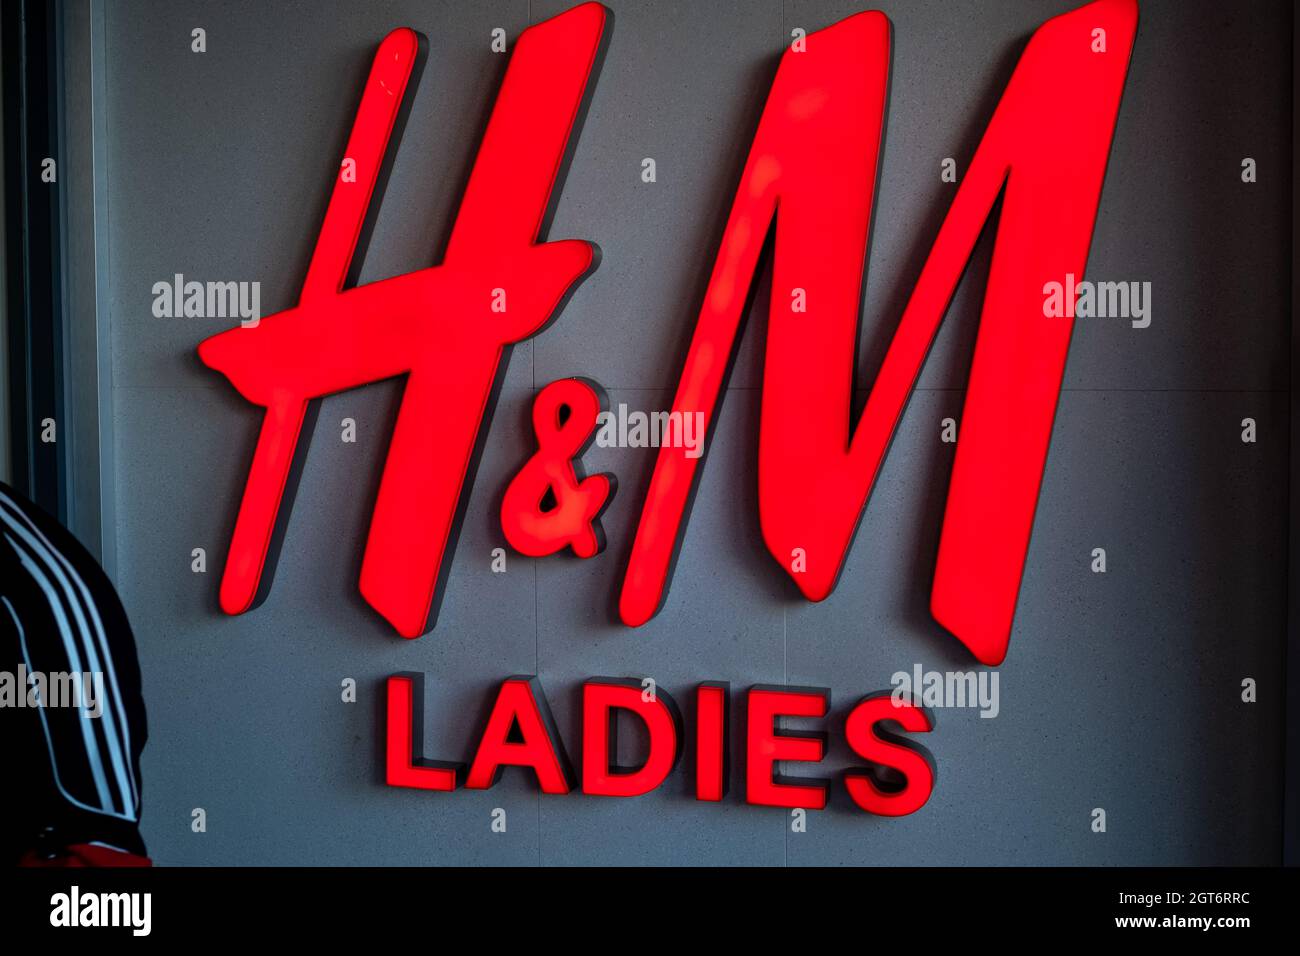 H&m logo immagini e fotografie stock ad alta risoluzione - Alamy